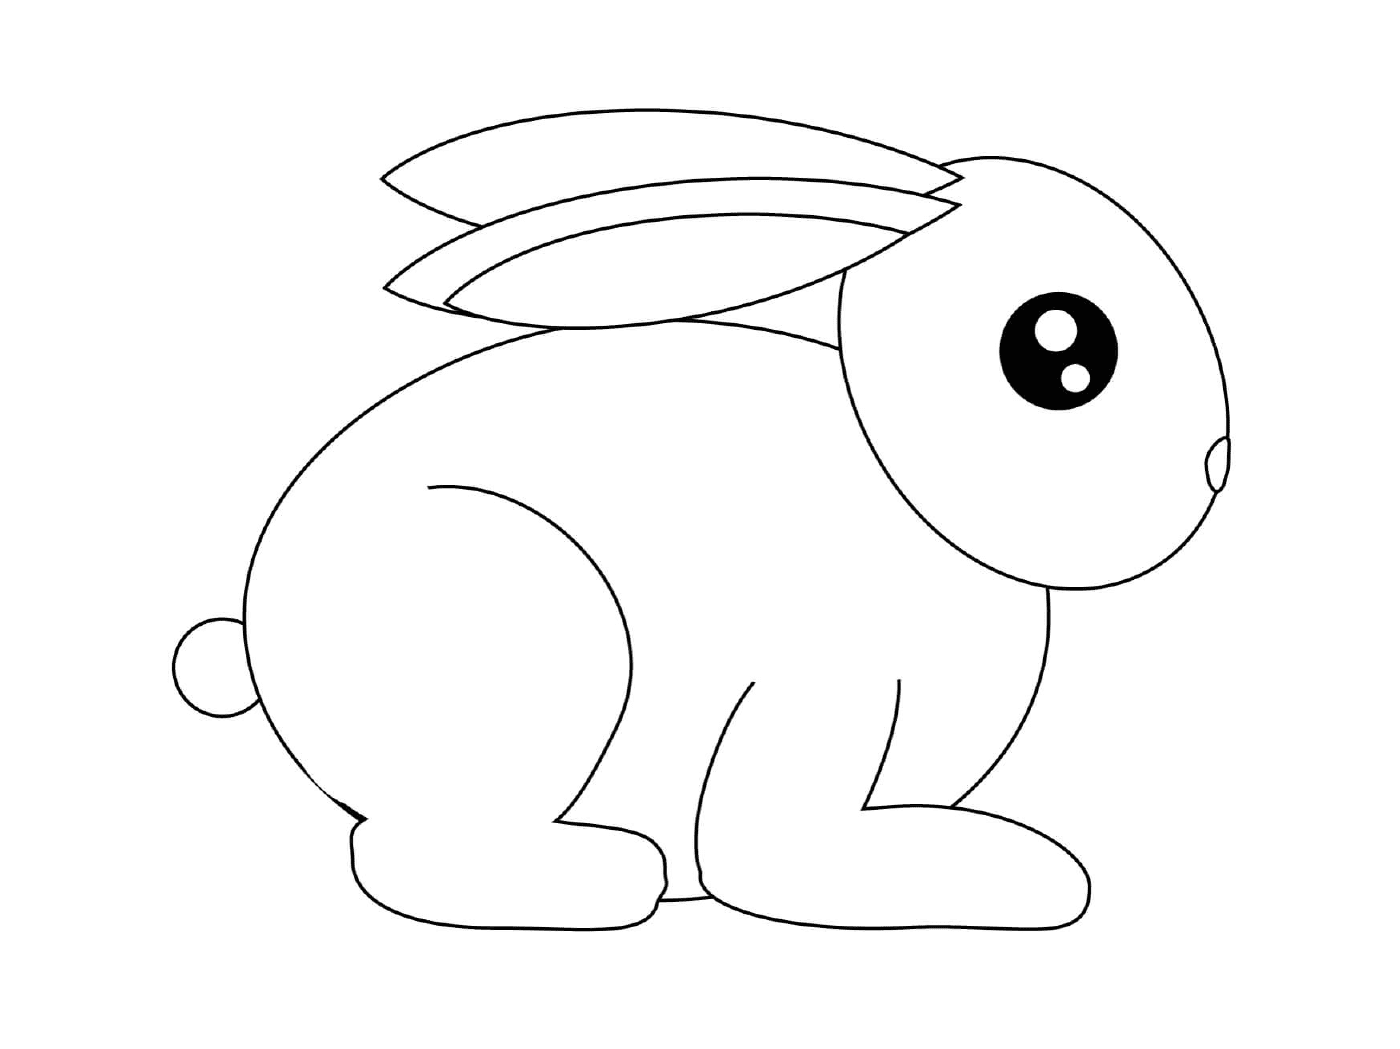  Little rabbit ready to run 